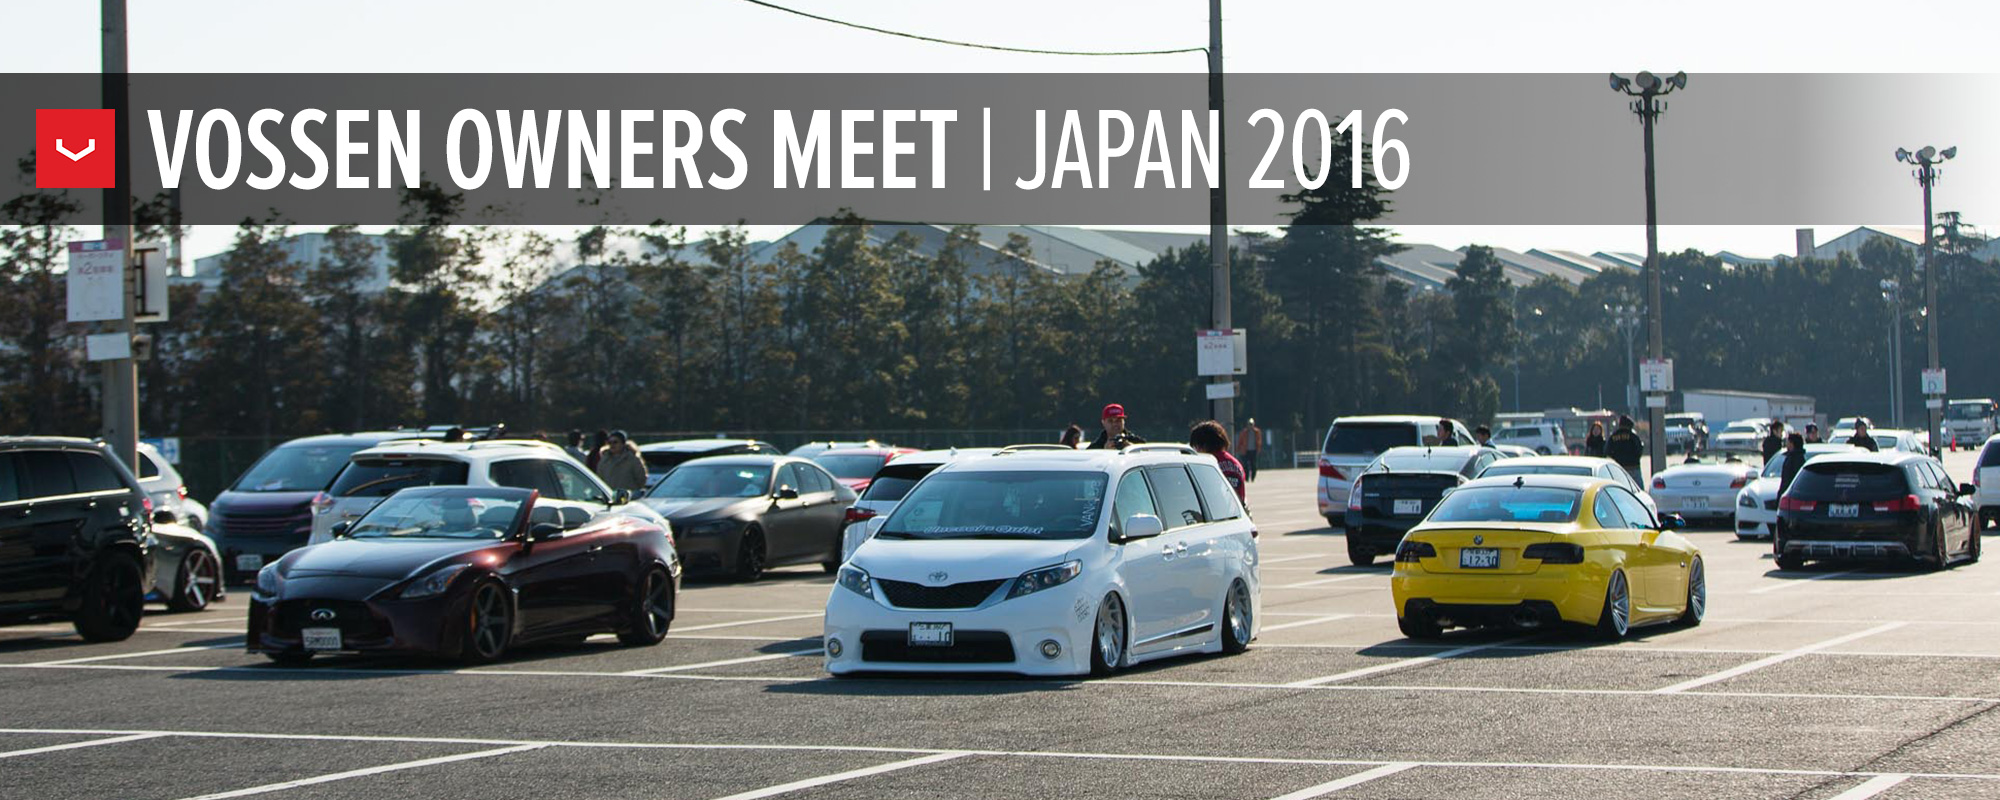 Japan-2016-Owners-Meet